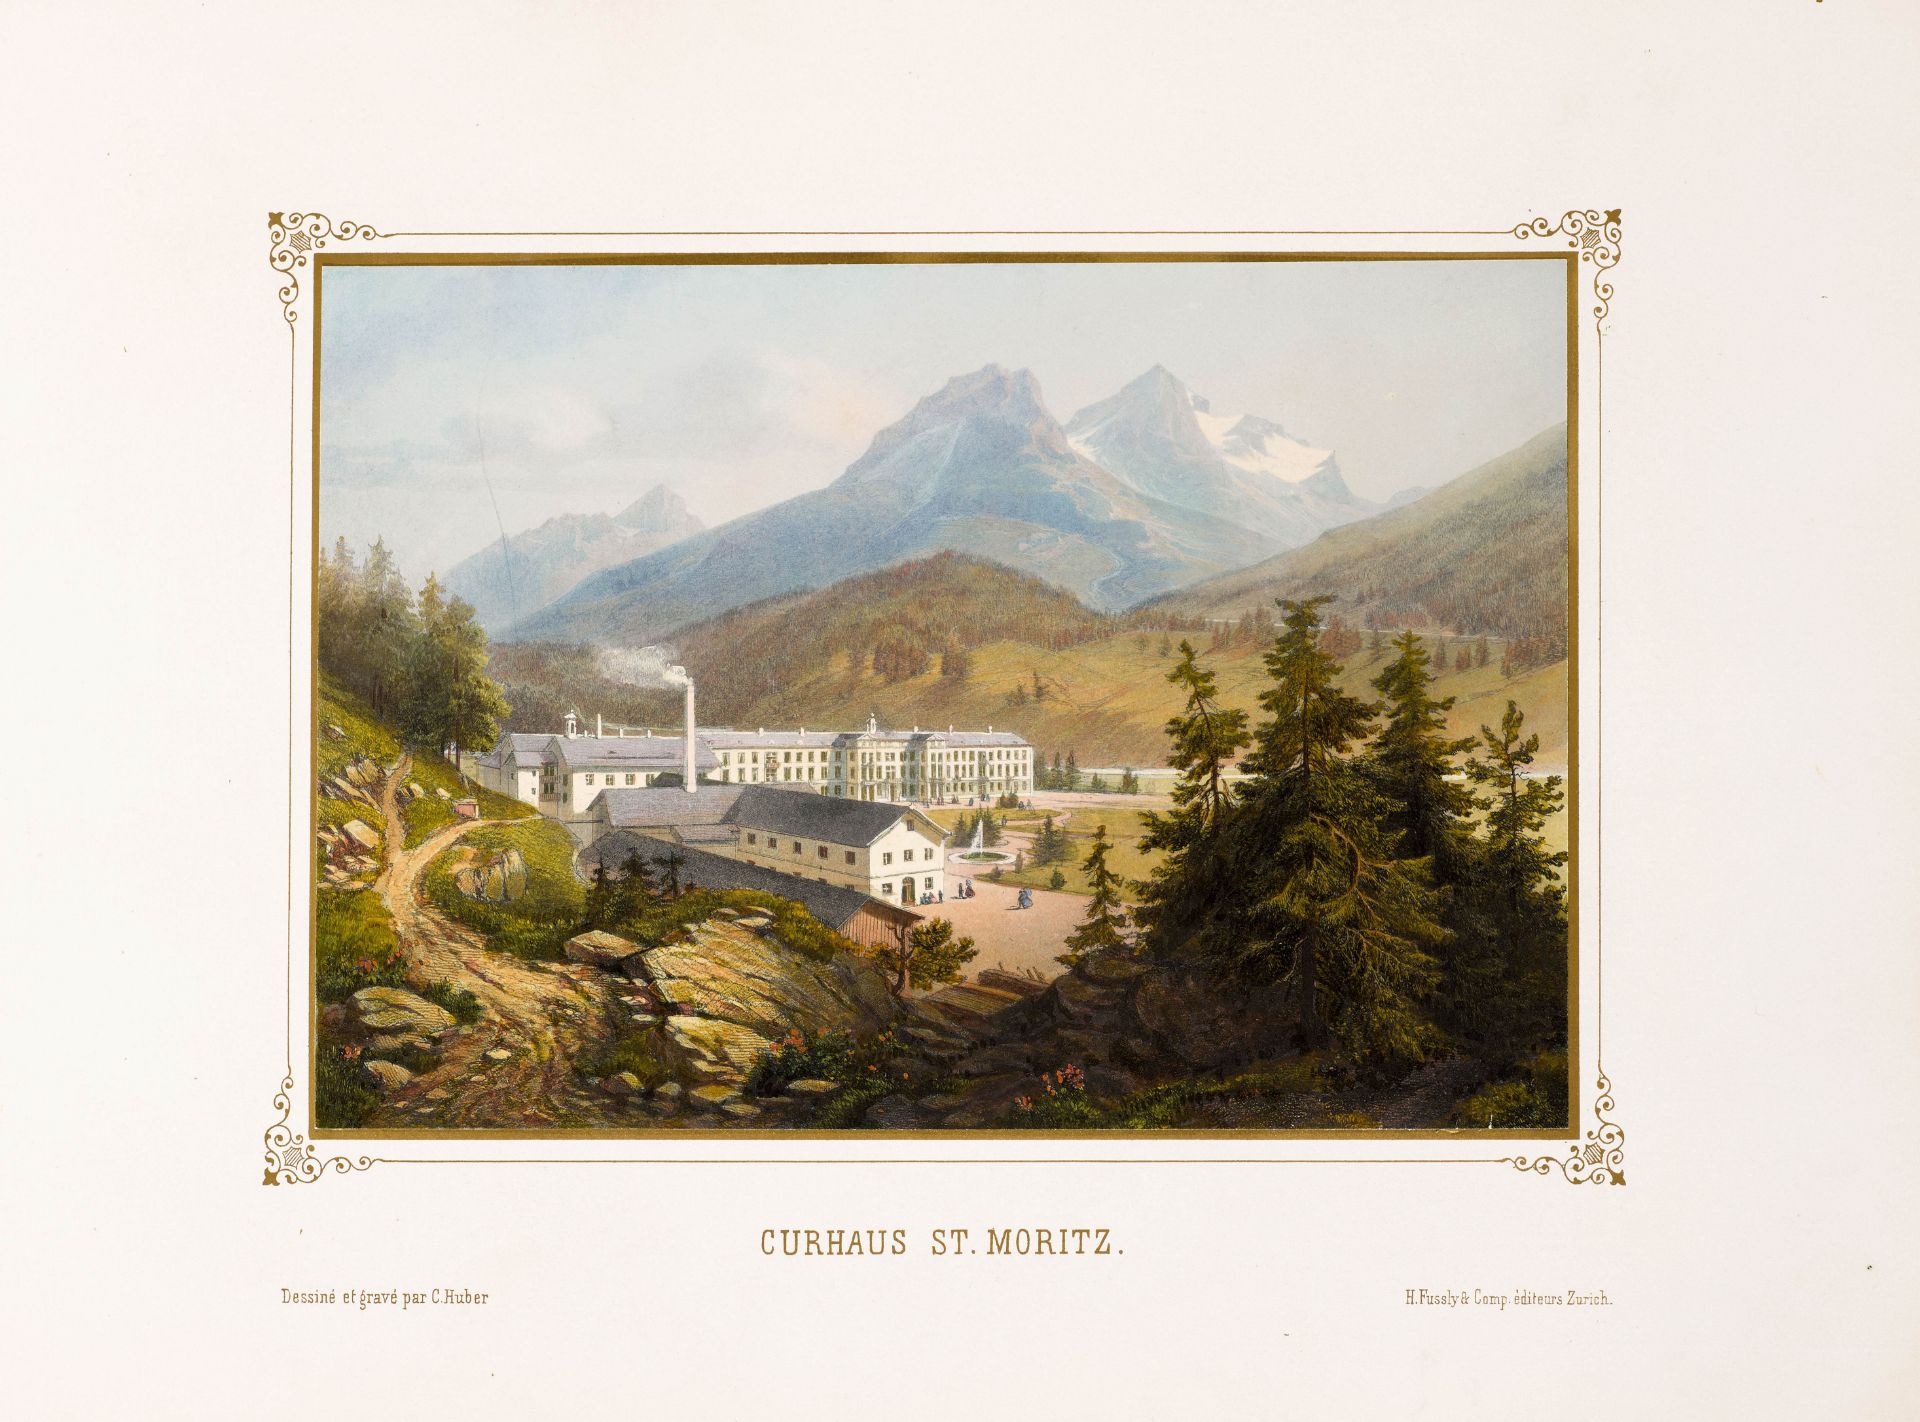 GRAUBÜNDEN -Huber, C[aspar].Album von St. Moritz in Oberengadin Ct. Graubünden. Mit gest. kolor. - Bild 2 aus 3